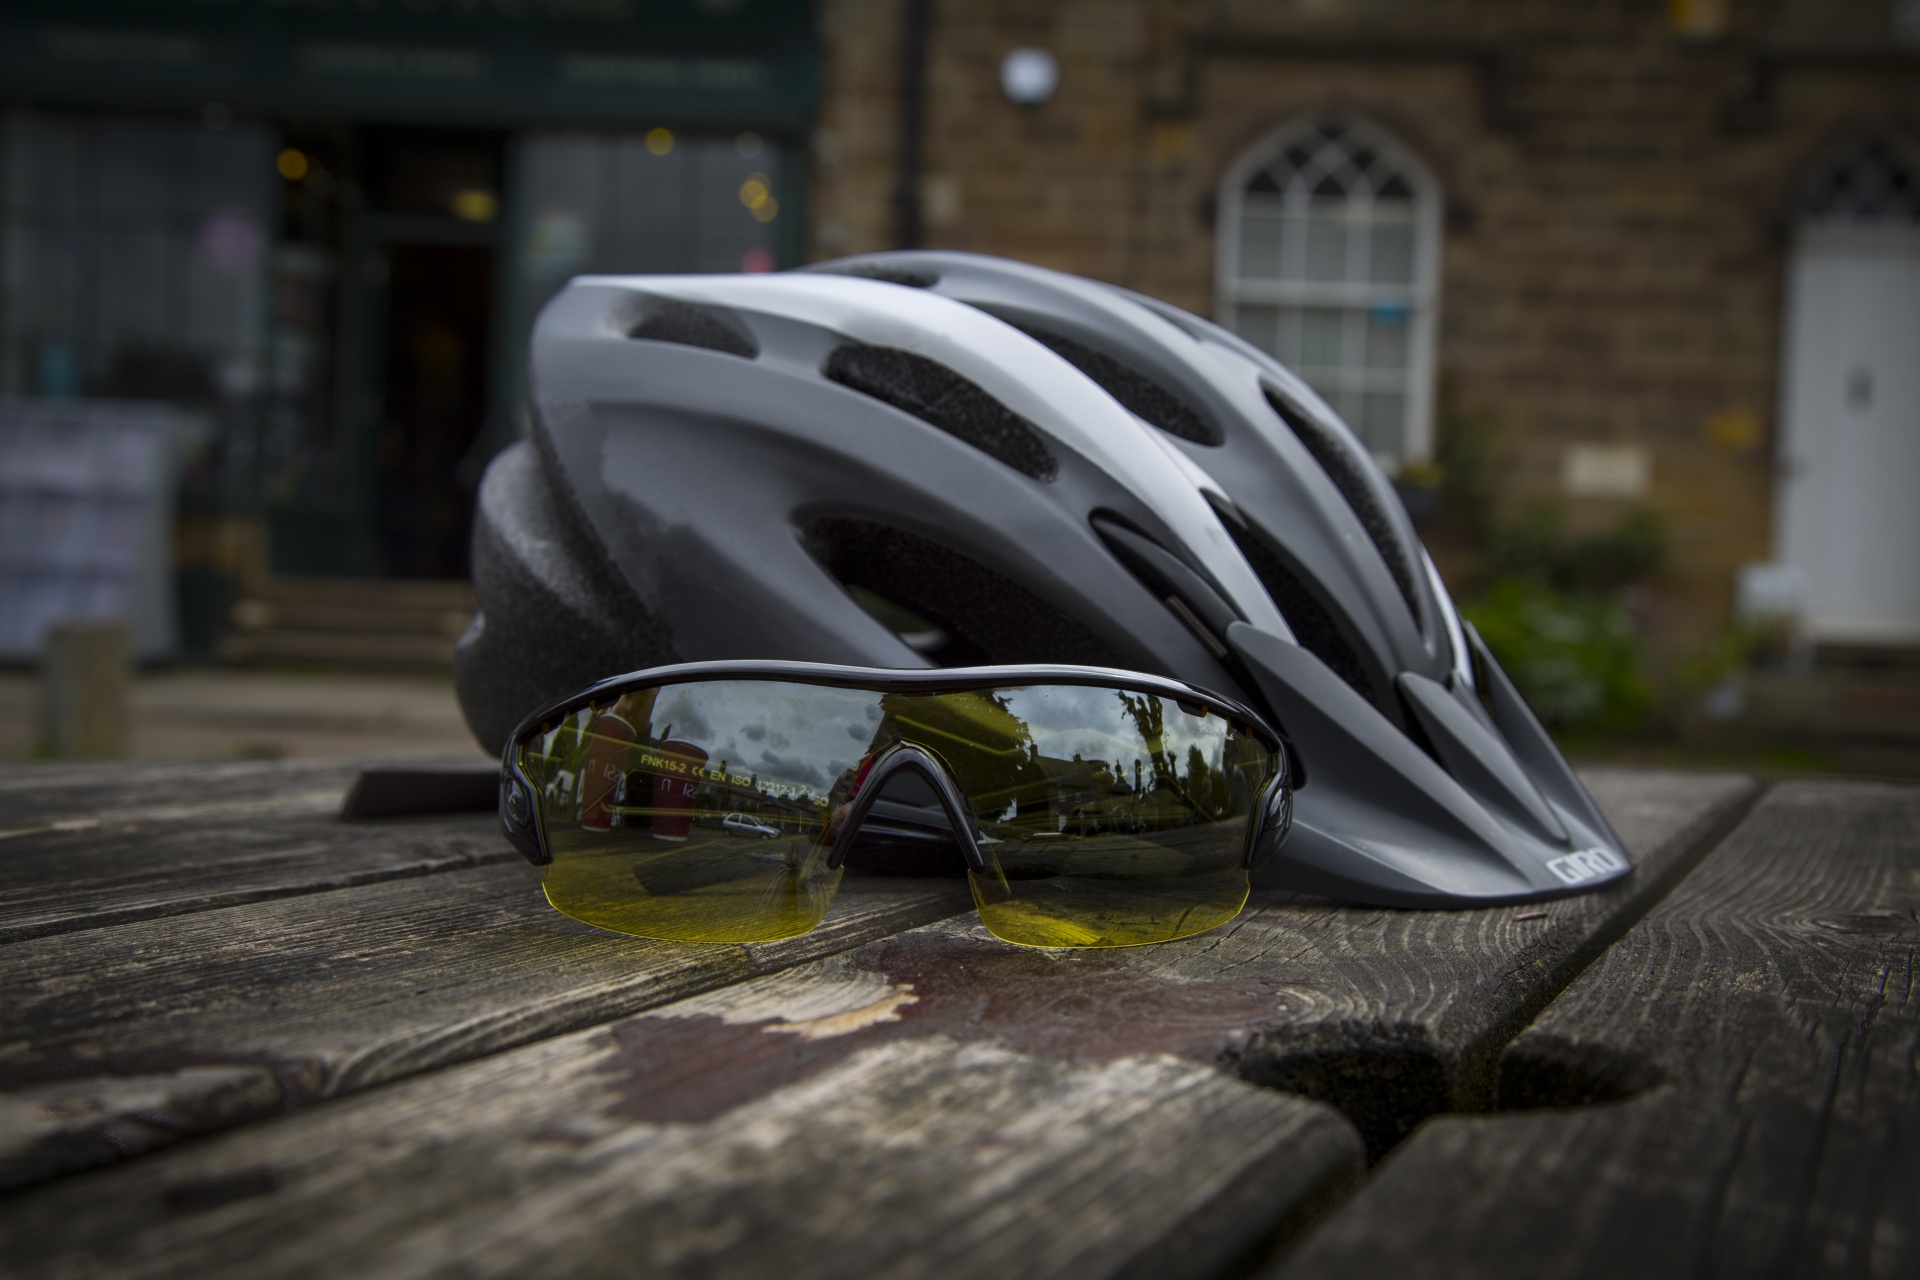 Bike Helmet And Sport Sunglass